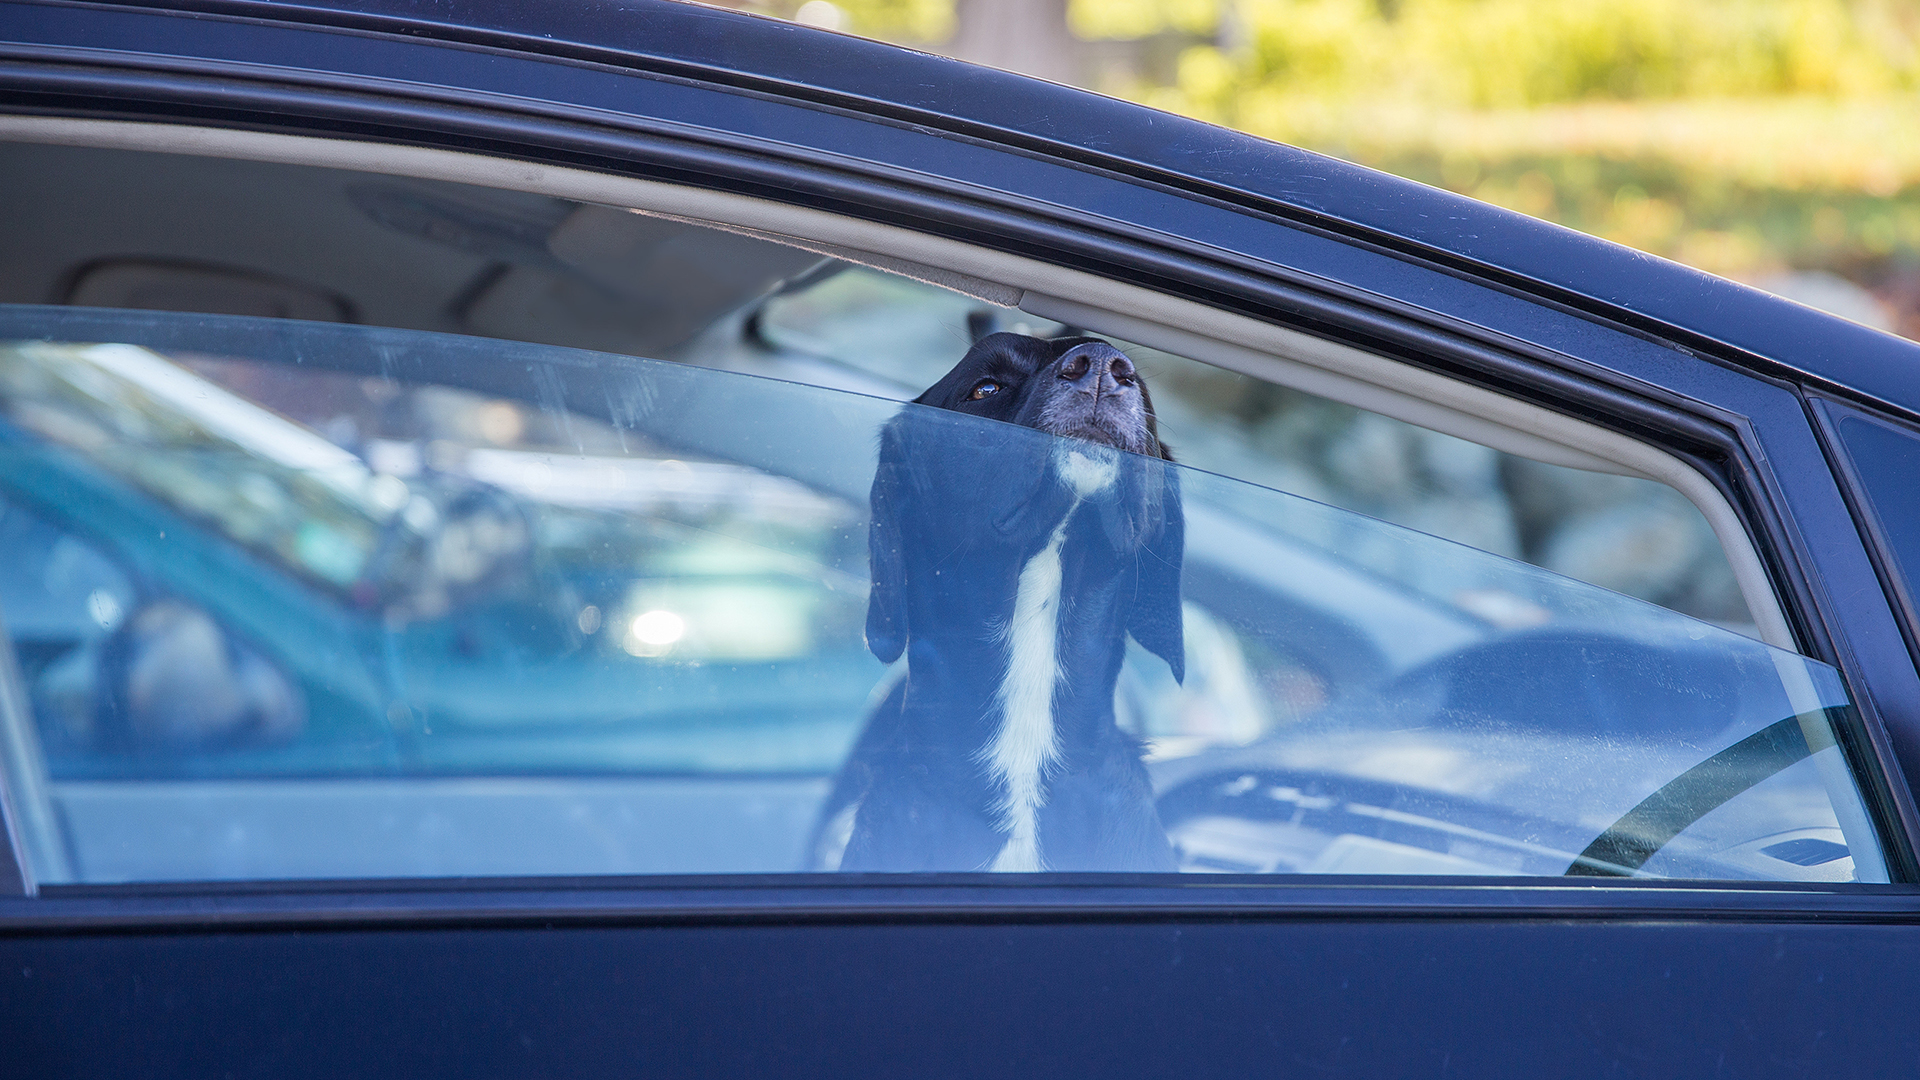 Nunca hay que dejar a perros encerrados en vehículos, sobretodo en época de calores extremos (Shutterstock)